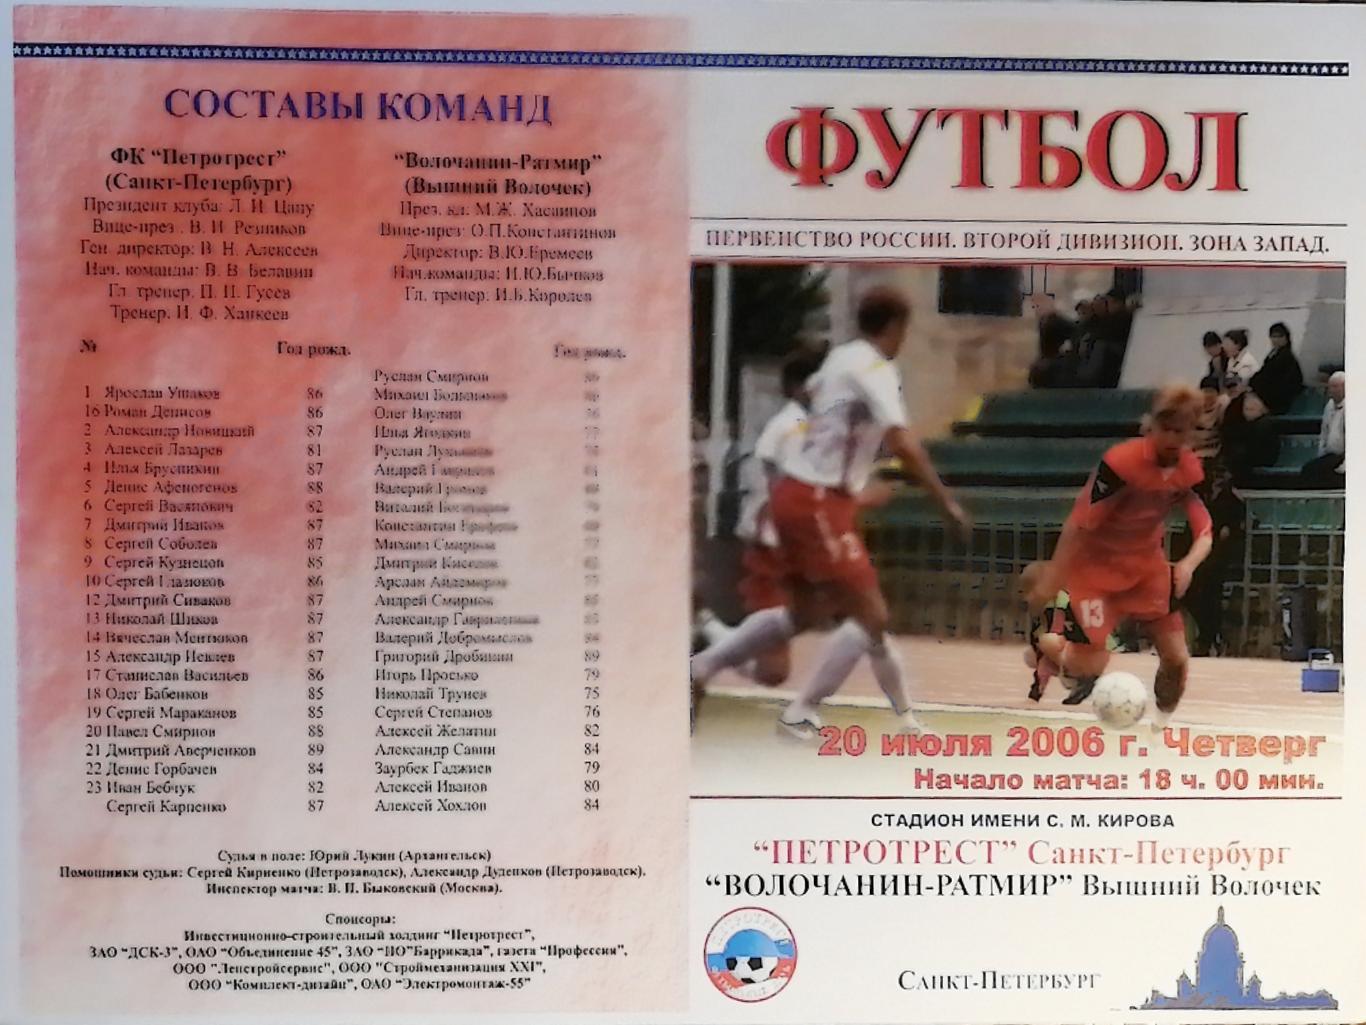 Второй дивизион. Петротрест СПб - Волочанин-Ратмир. 20.07.2006